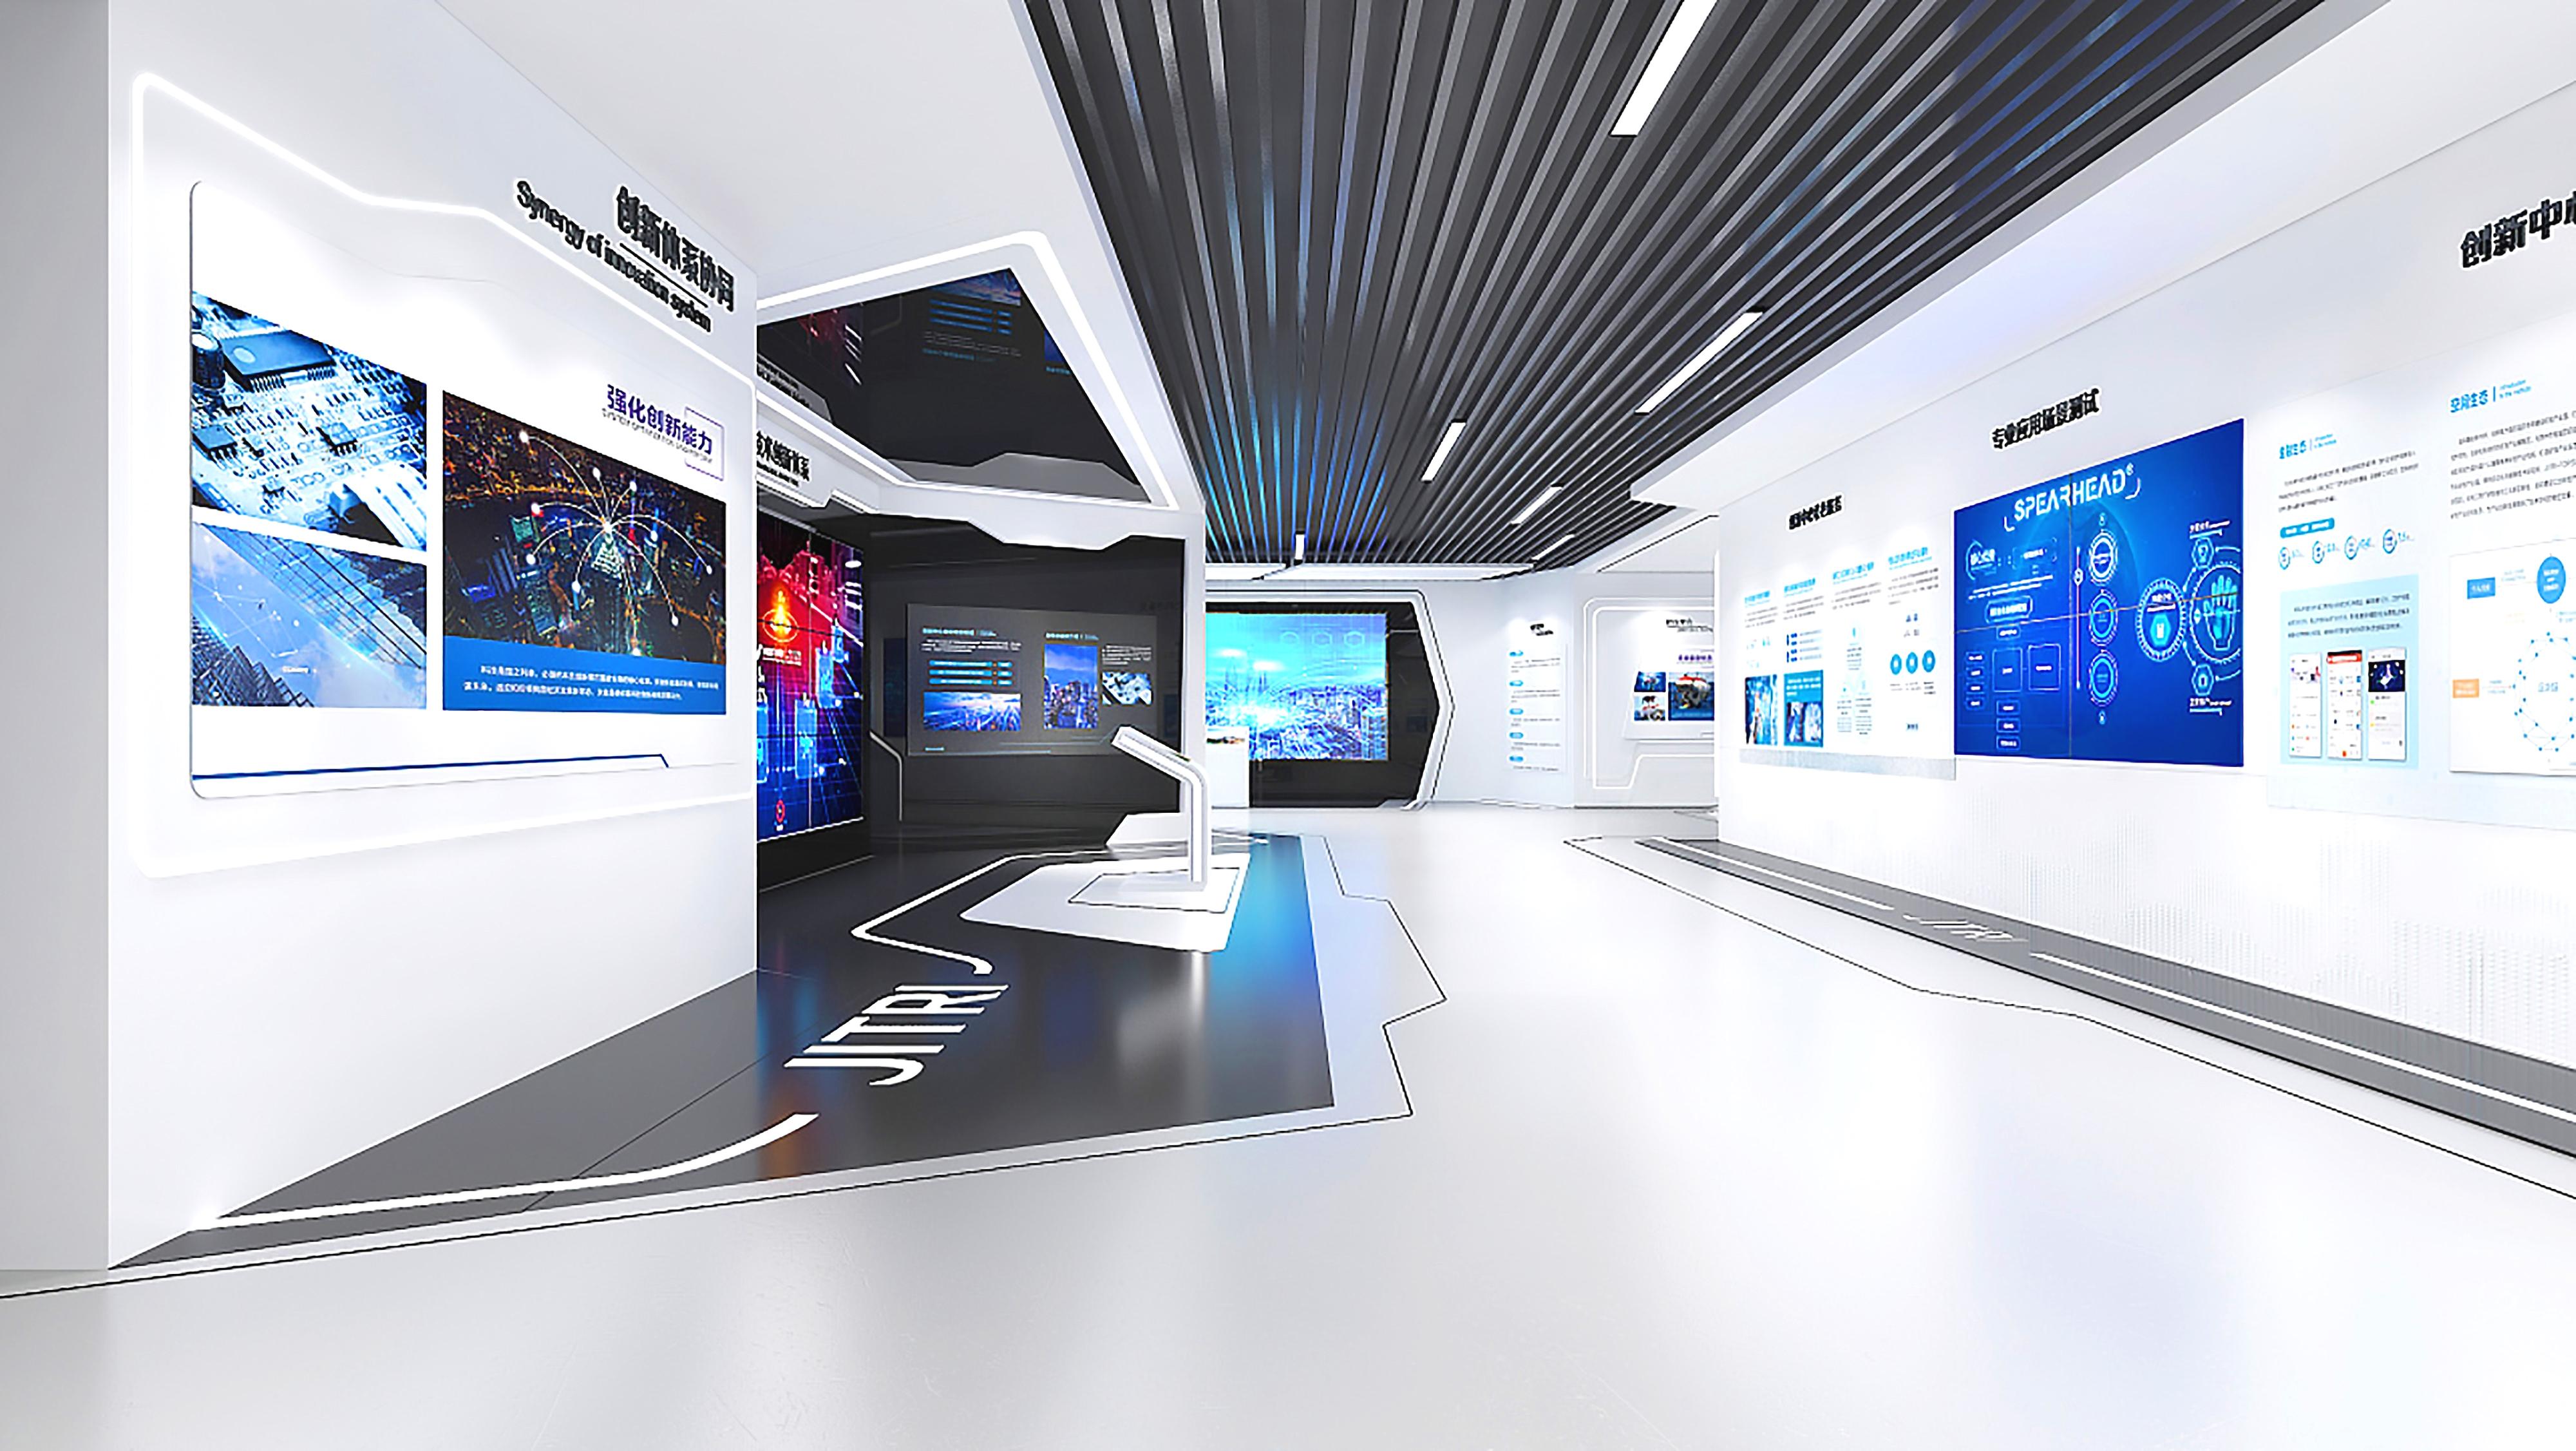 这是一个现代展览厅内部，墙上有多个显示屏和信息图表，整体色调以白色和蓝色为主，设计风格简洁未来感强。